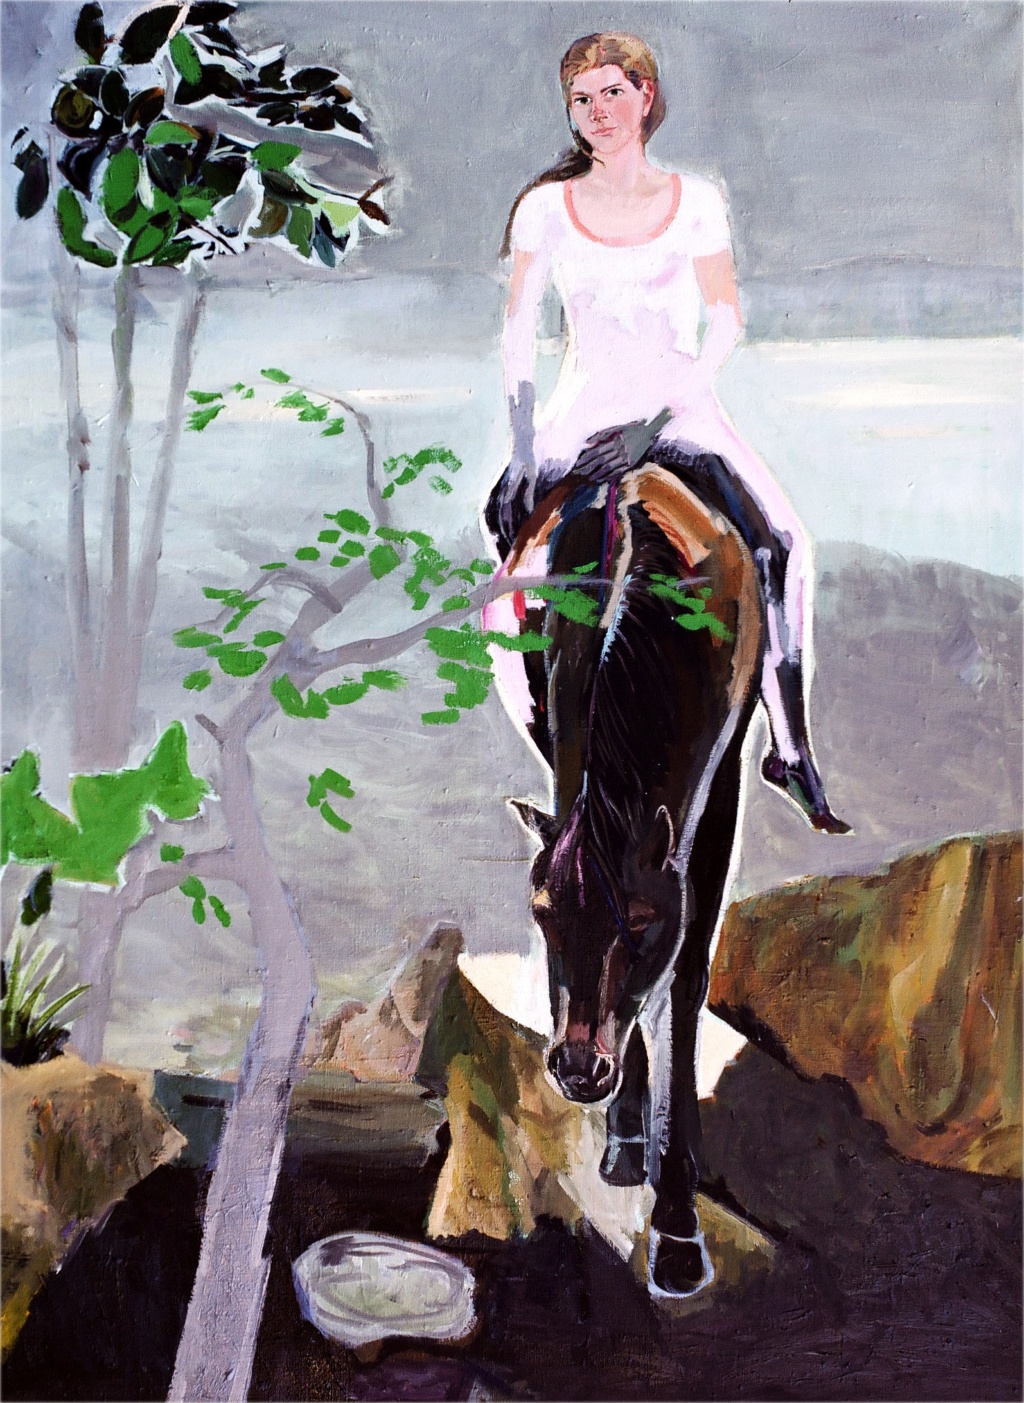 Balz Baechi, D. A. auf Pferd, 2005–2013
Oil on canvas
135 x 100 cm